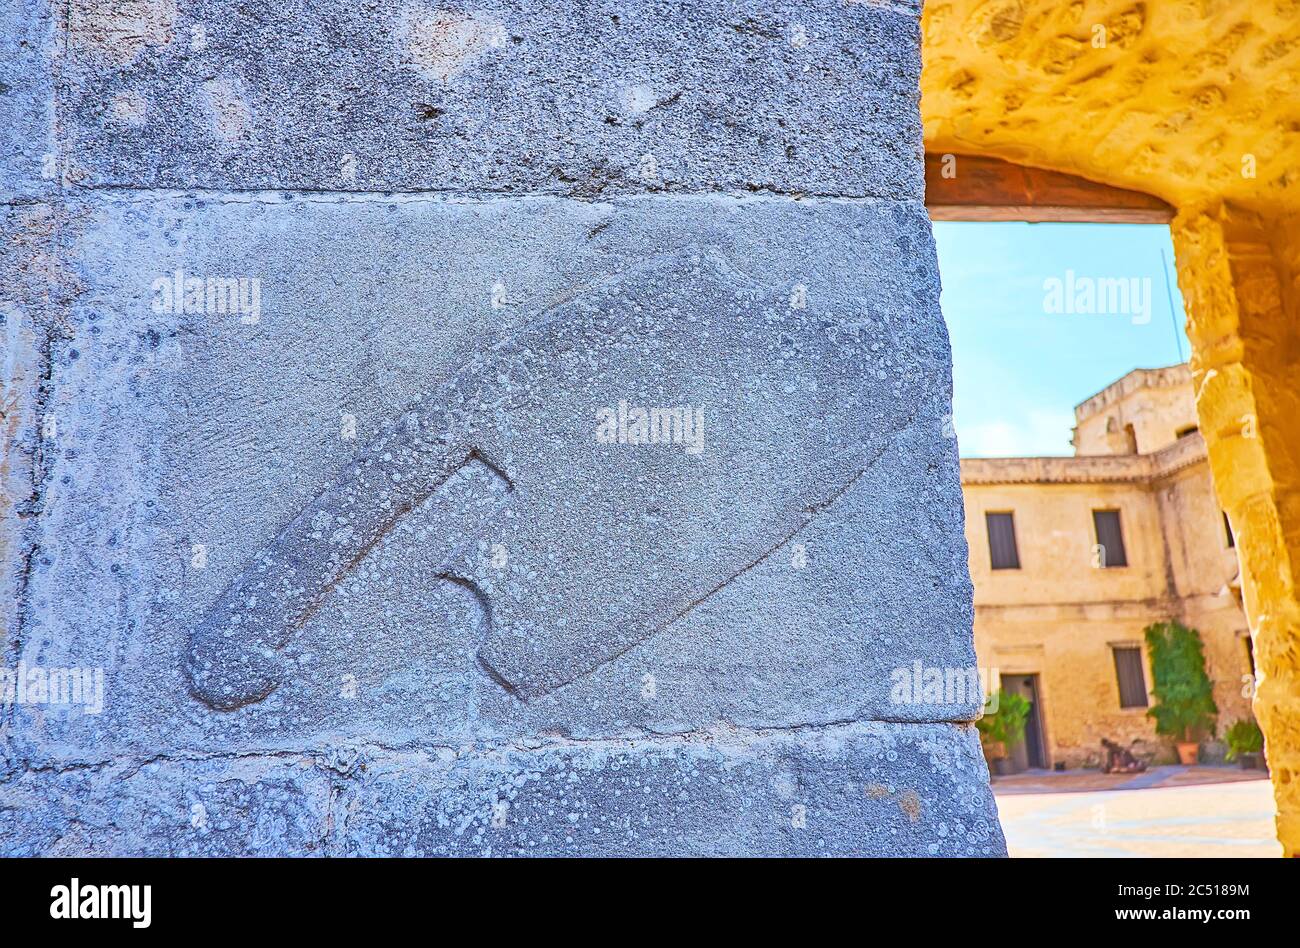 Die mittelalterliche Schnitzerei des Spaltgravins (Wappen), die an der Wand des Schlosses Castillo de Santiago in Sanlucar, Spanien, erhalten ist Stockfoto